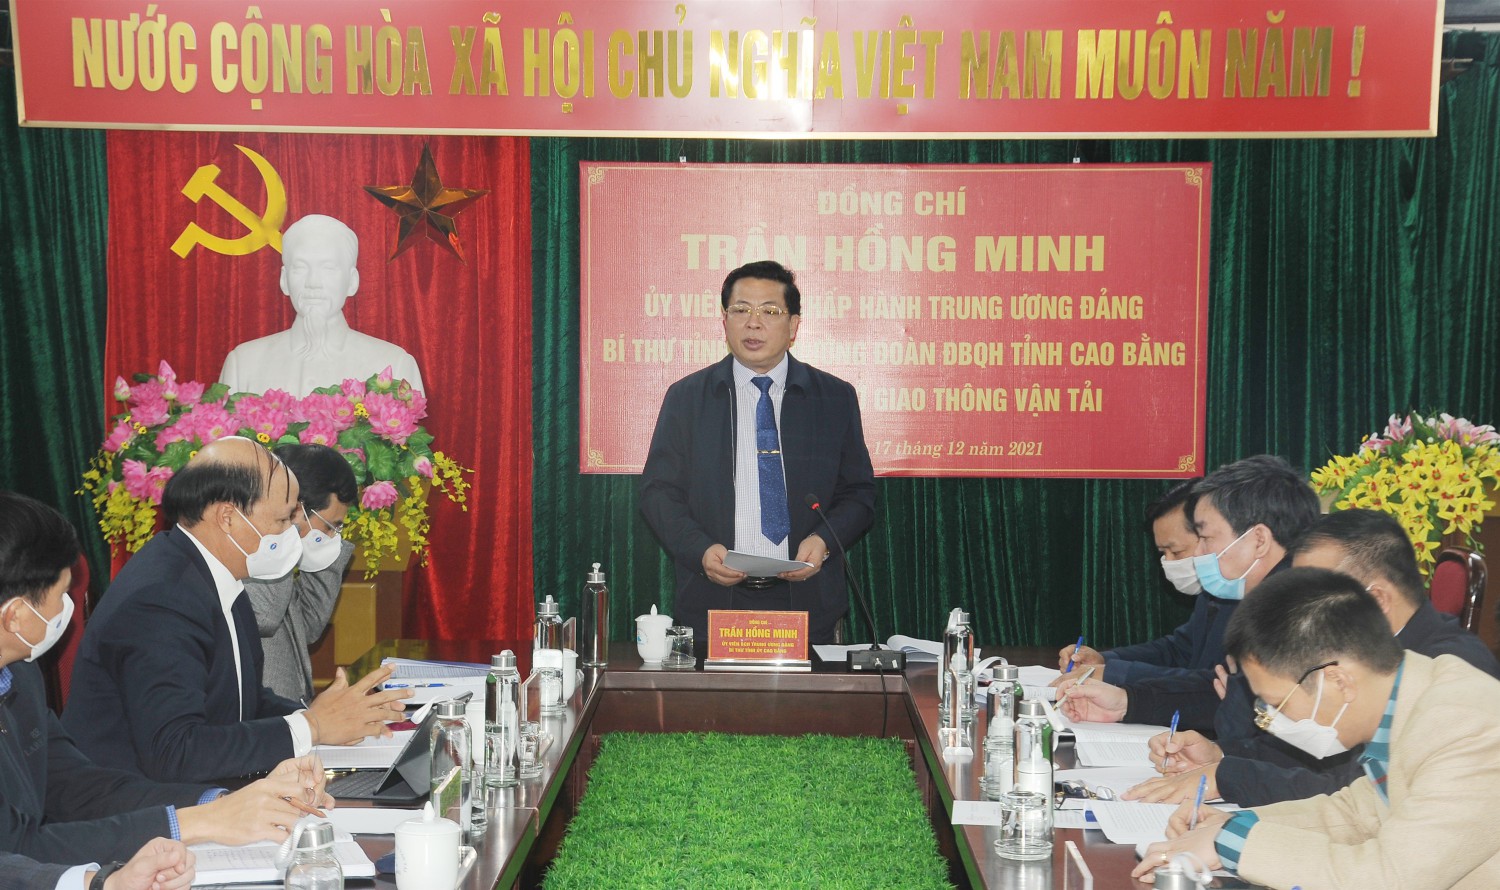 Bí thư Tỉnh ủy Trần Hồng Minh phát biểu kết luận buổi làm việc với Sở Giao thông - Vận tải.